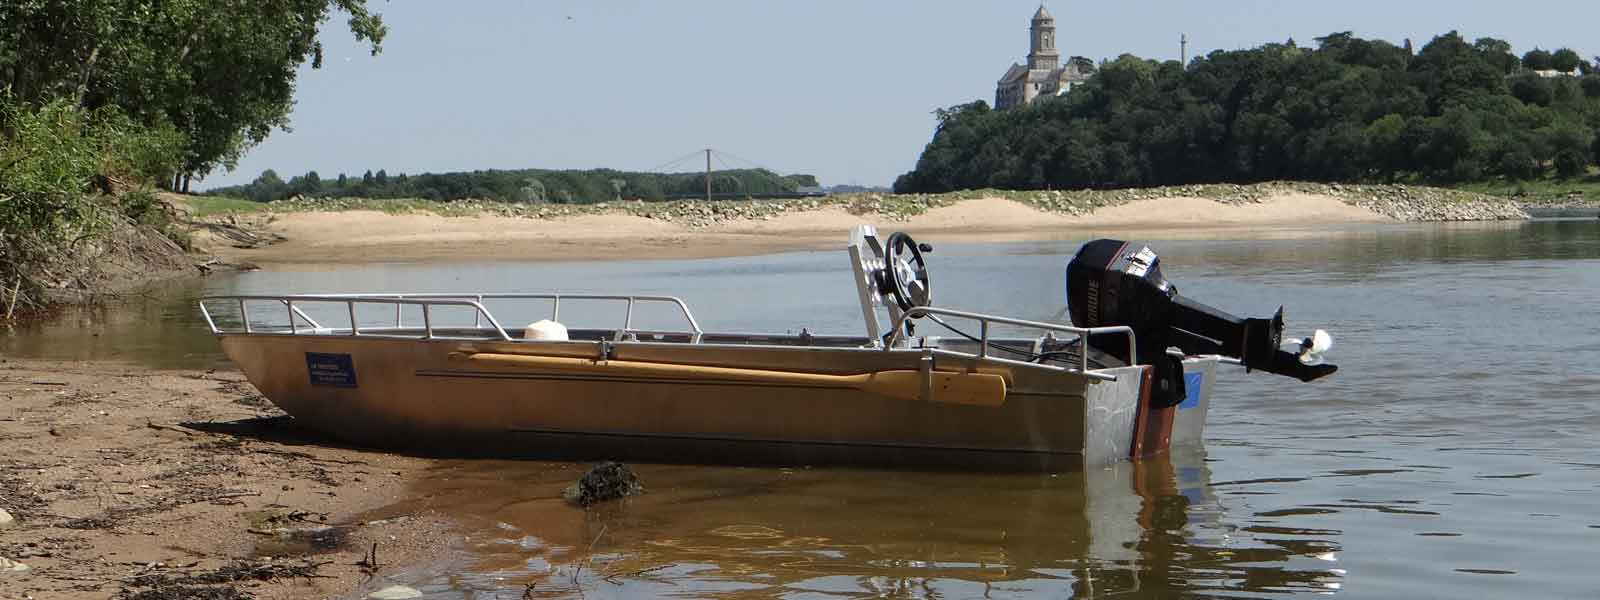 Barca da pesca leggera in alluminio saldato